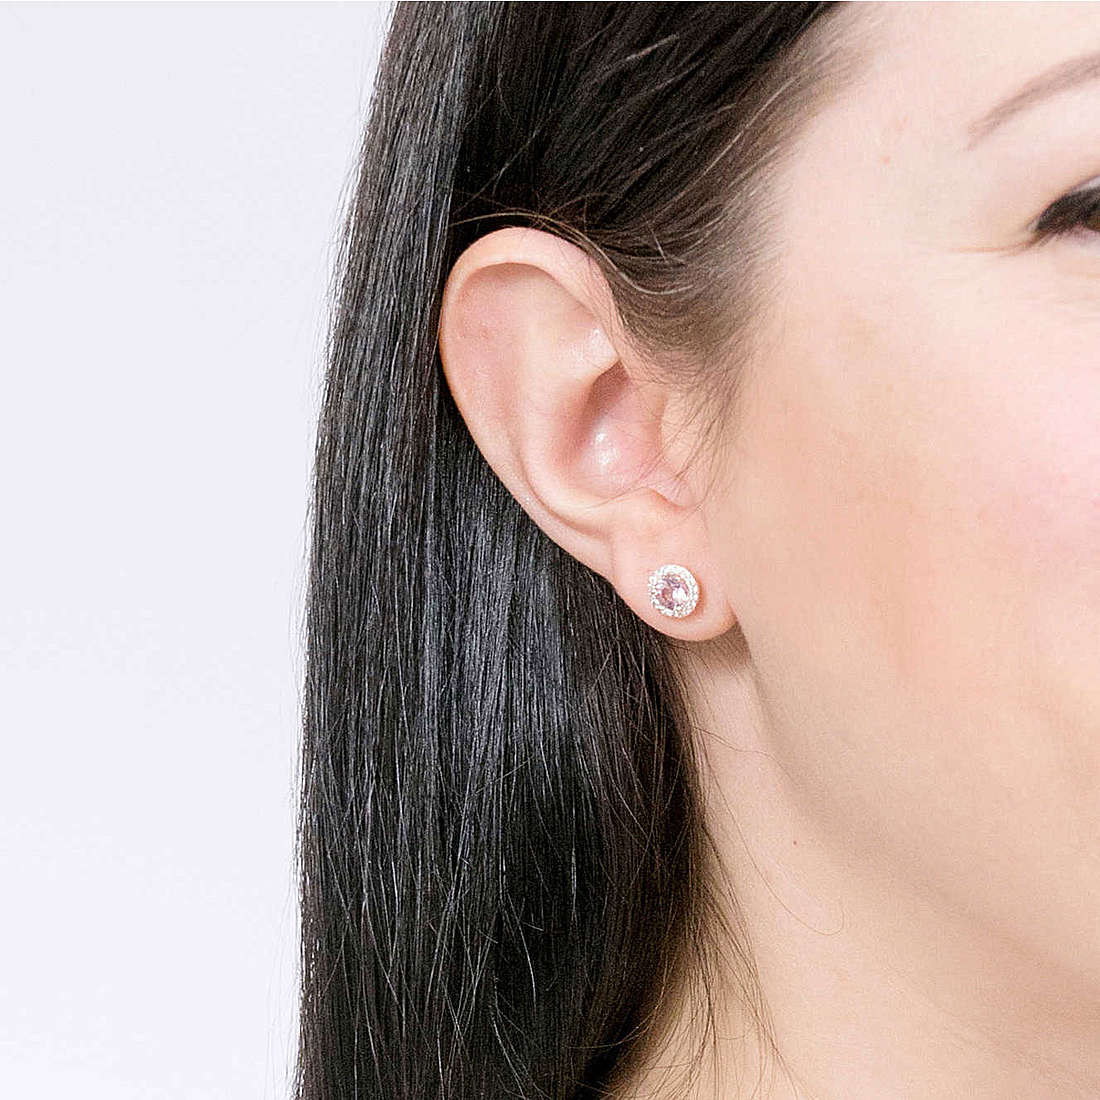 Michael Kors earrings Stud Earrings woman MKC1035A2791 wearing